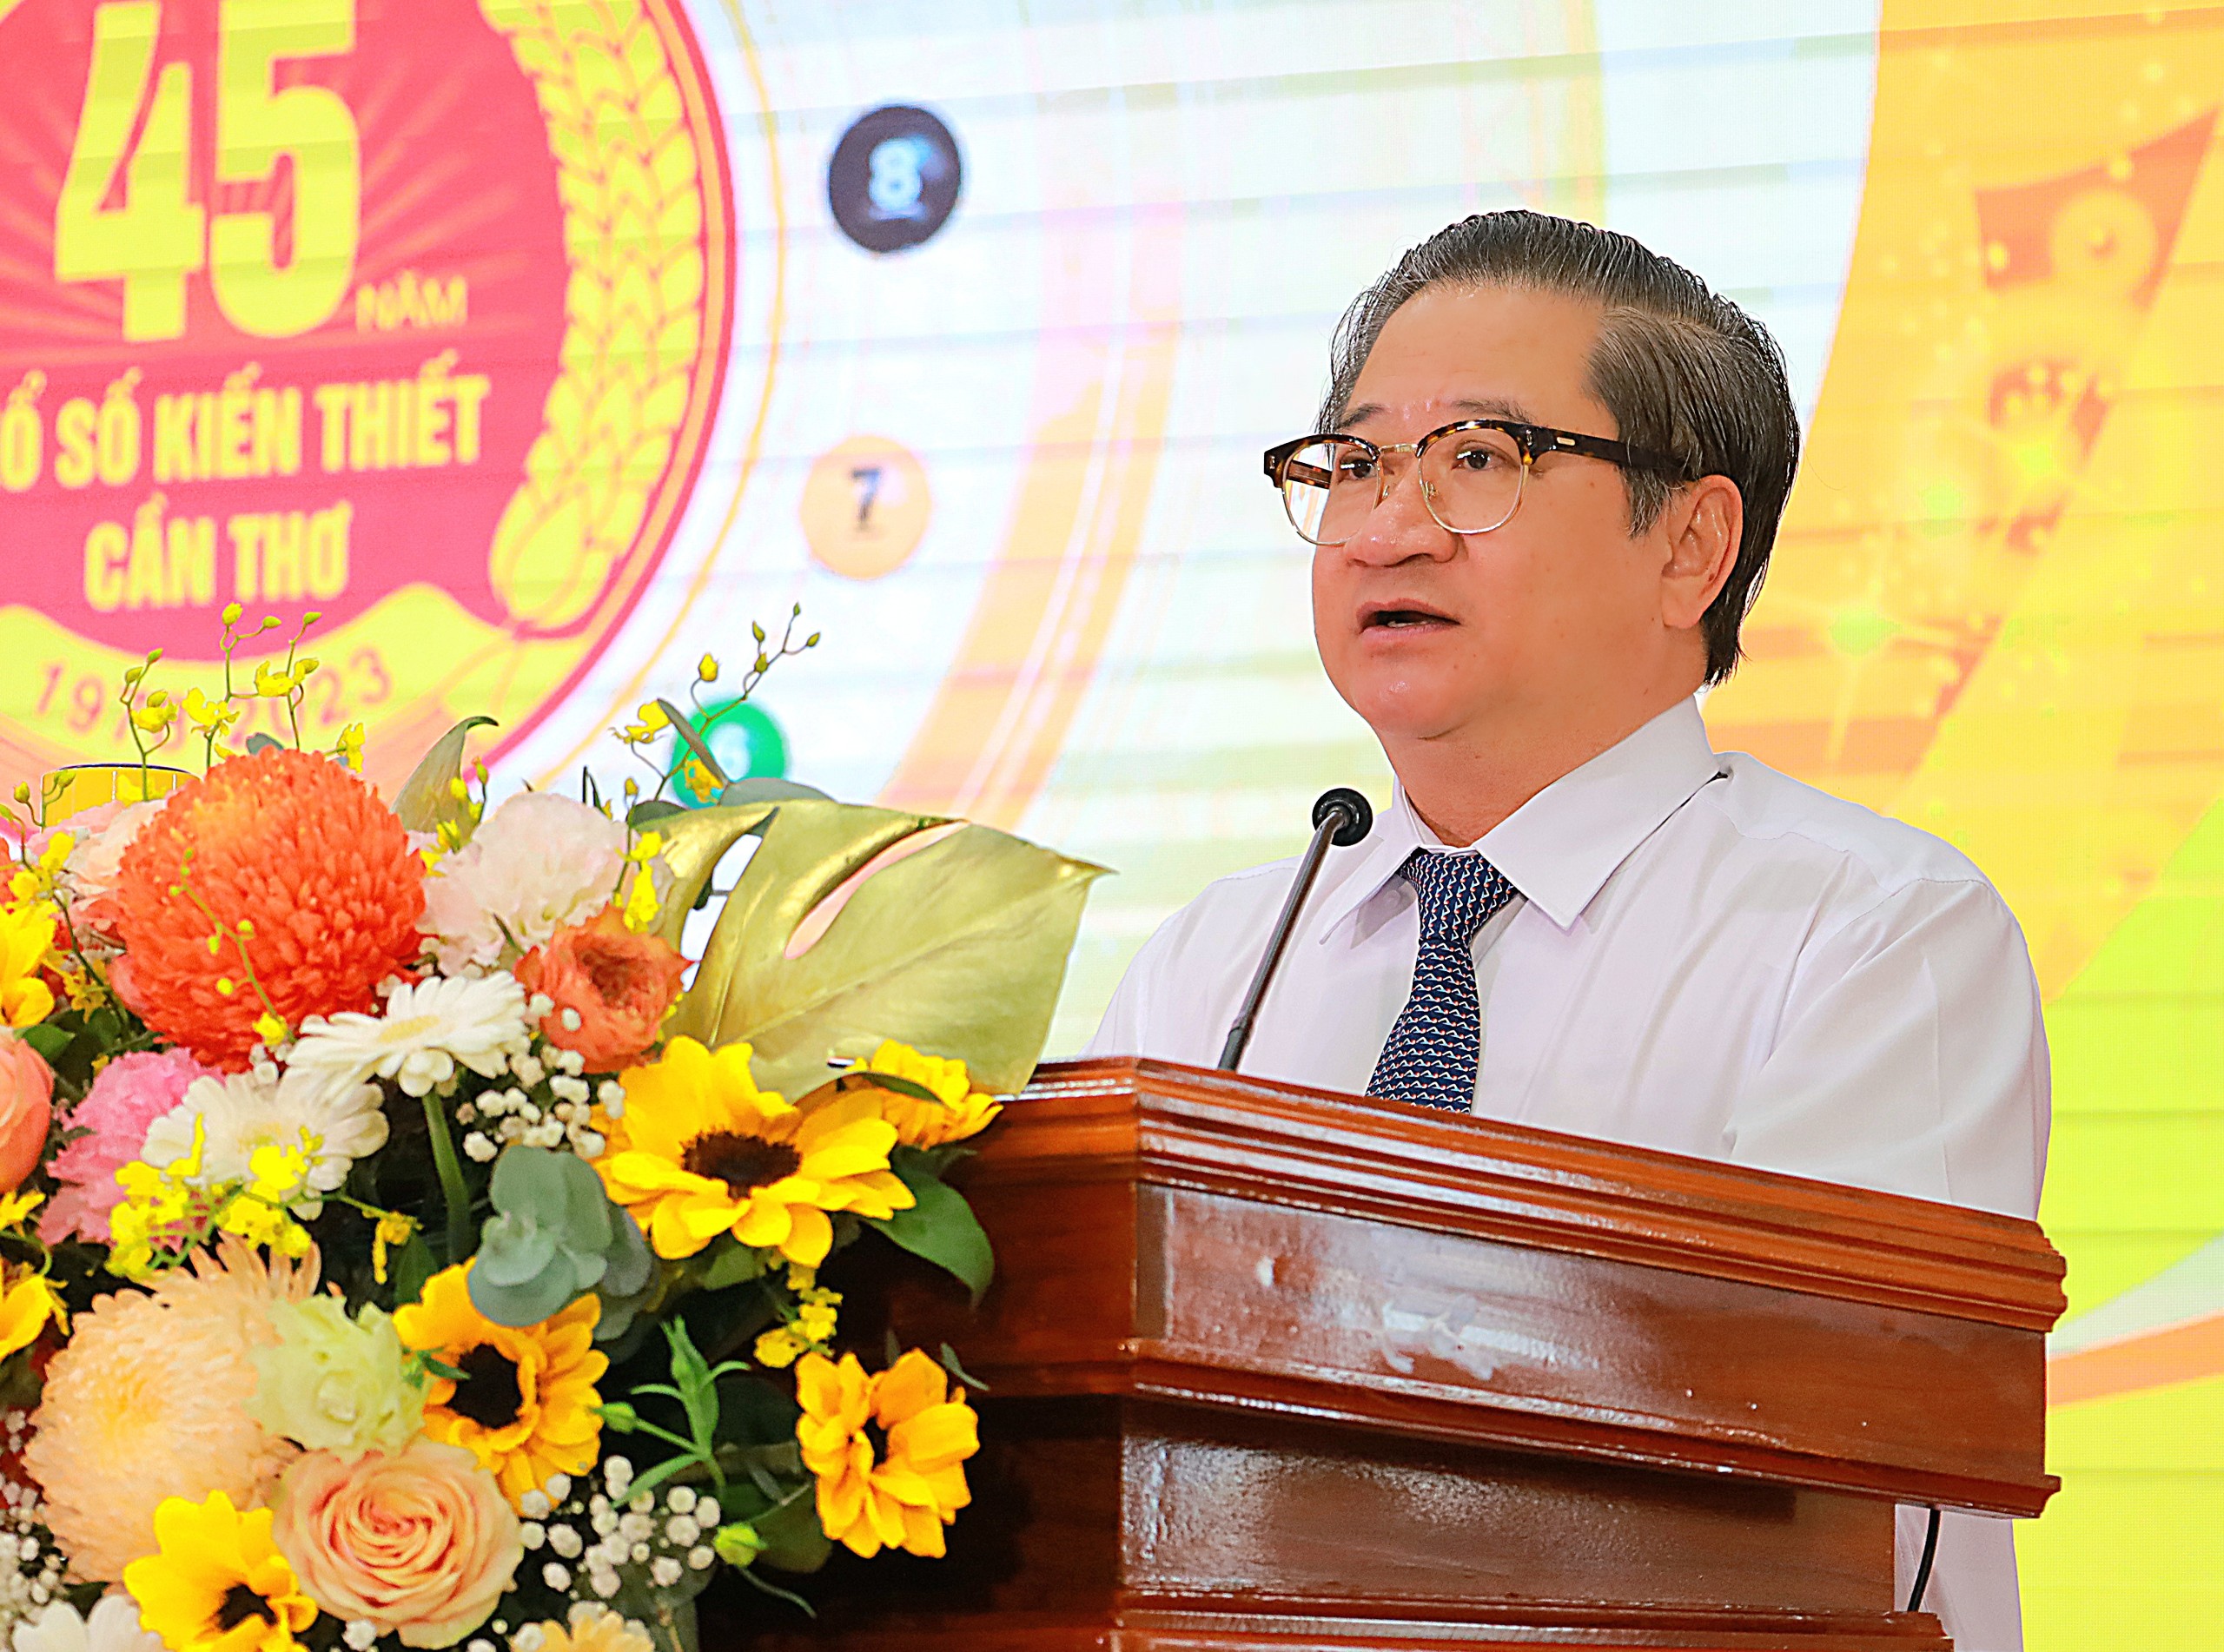 Ông Trần Việt Trường – Phó Bí thư Thành ủy, Chủ tịch UBND TP Cần Thơ phát biểu chỉ đạo tại lễ kỷ niệm.